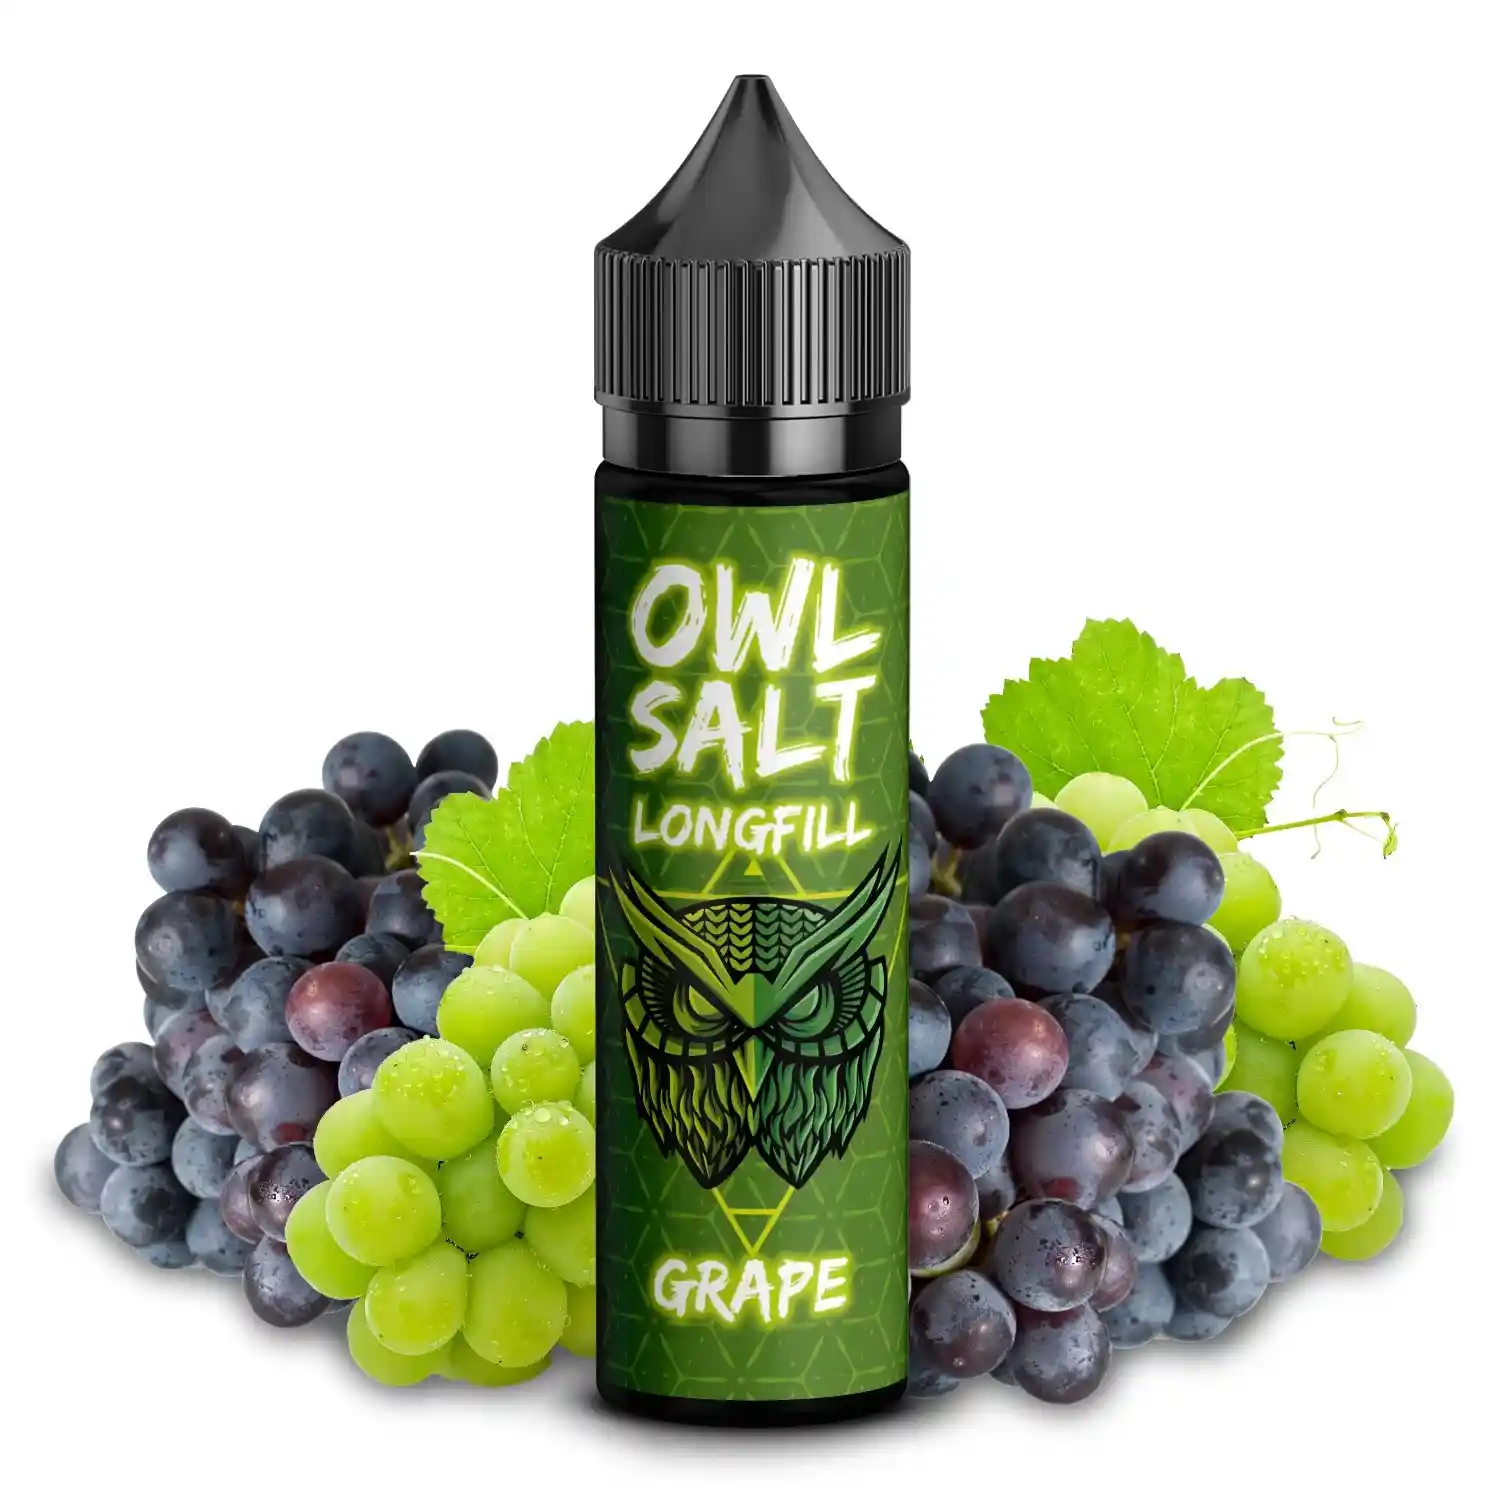 OWL Salt Longfill Grape 10 ml in 60 ml